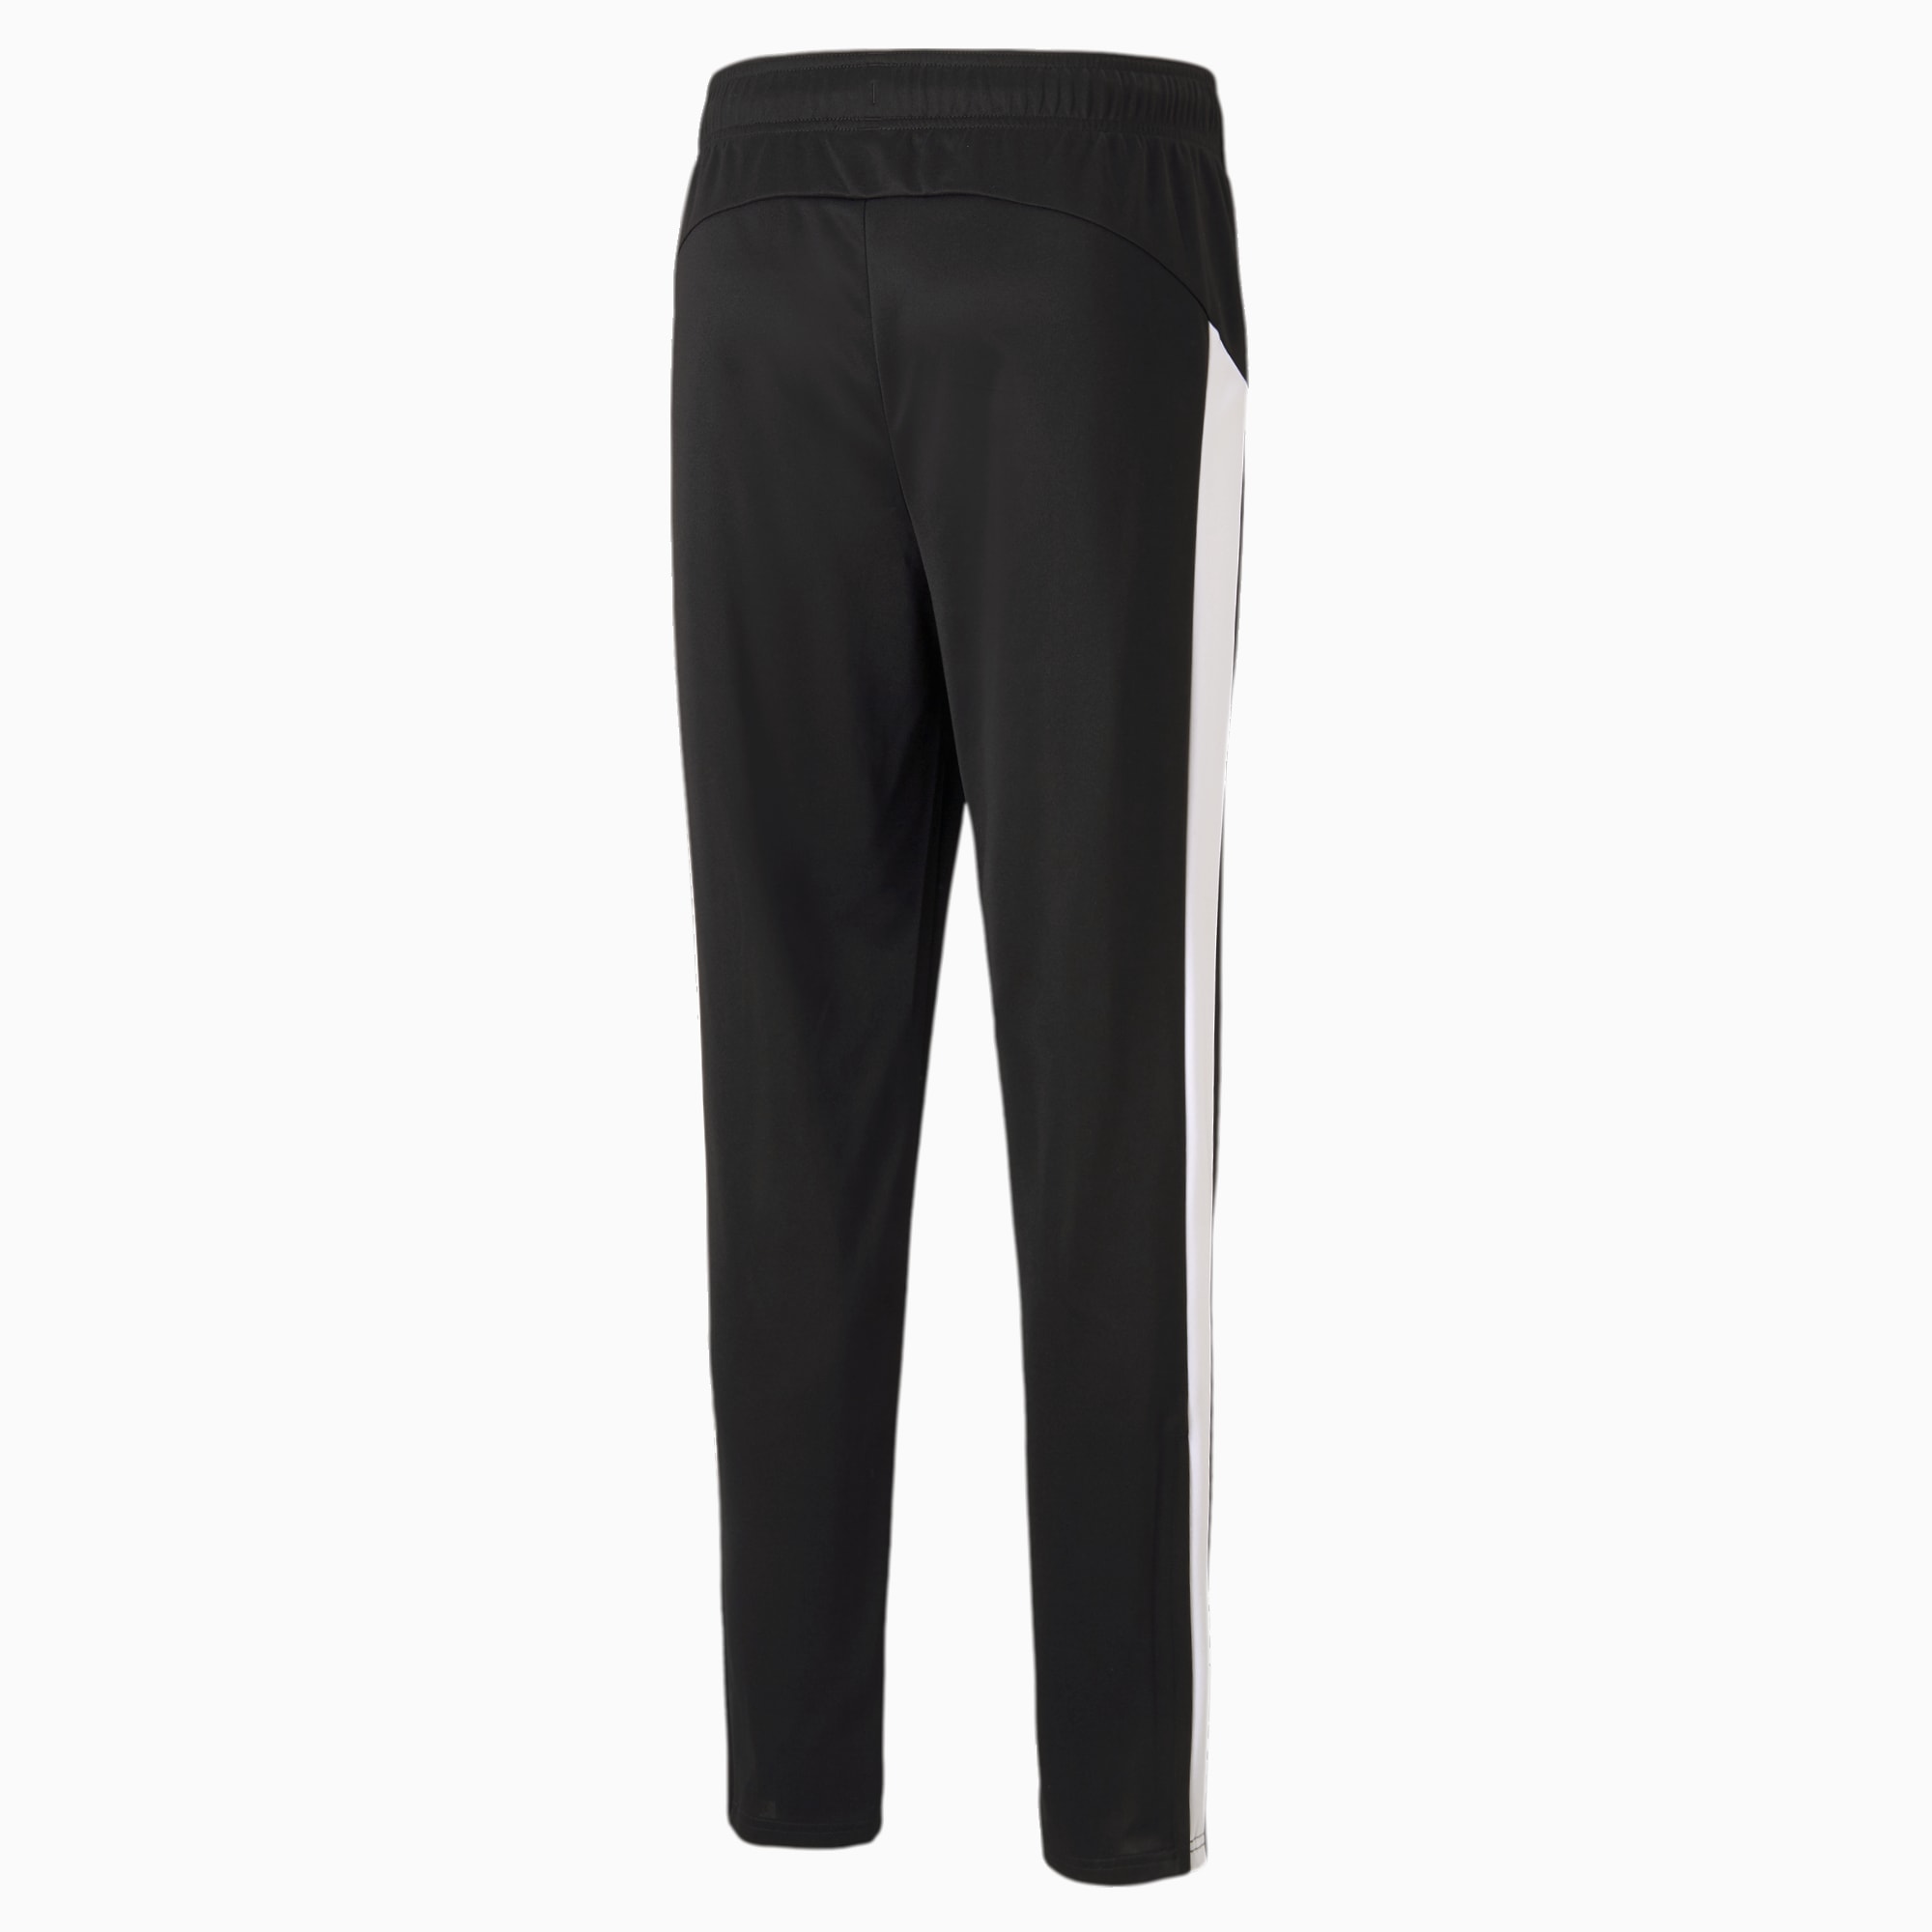 PUMA Active Tricot Men's Sweatpants, Black/White, Size XL, Clothing